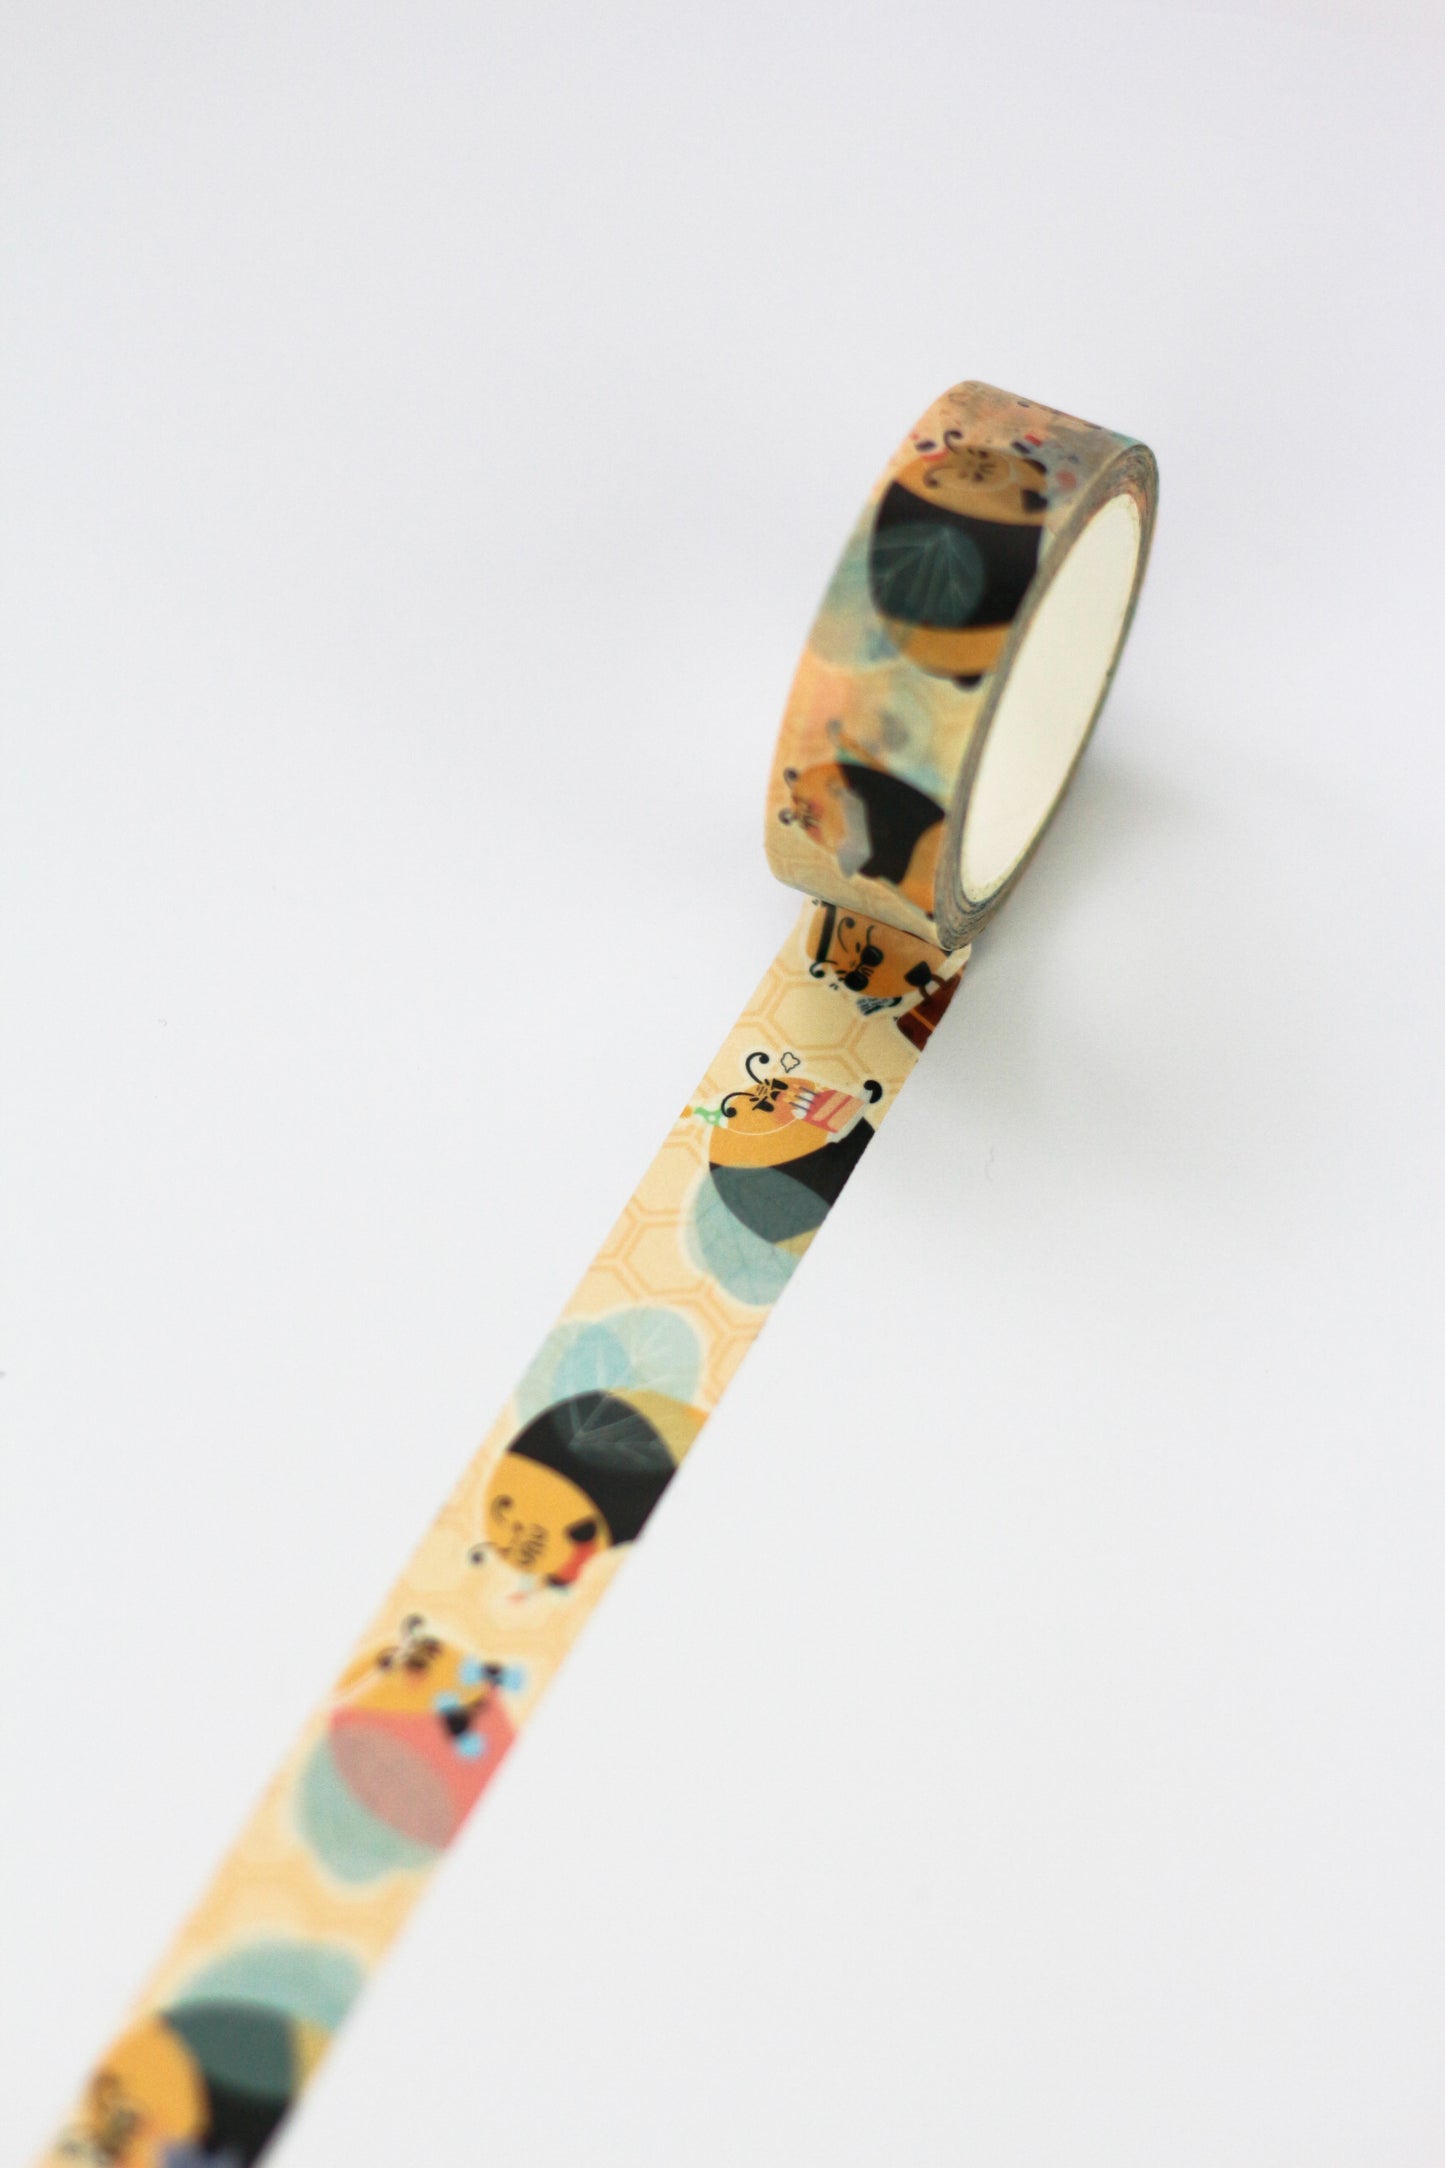 Grumbee Everyday - Washi tape abeille - Adorable masking tape